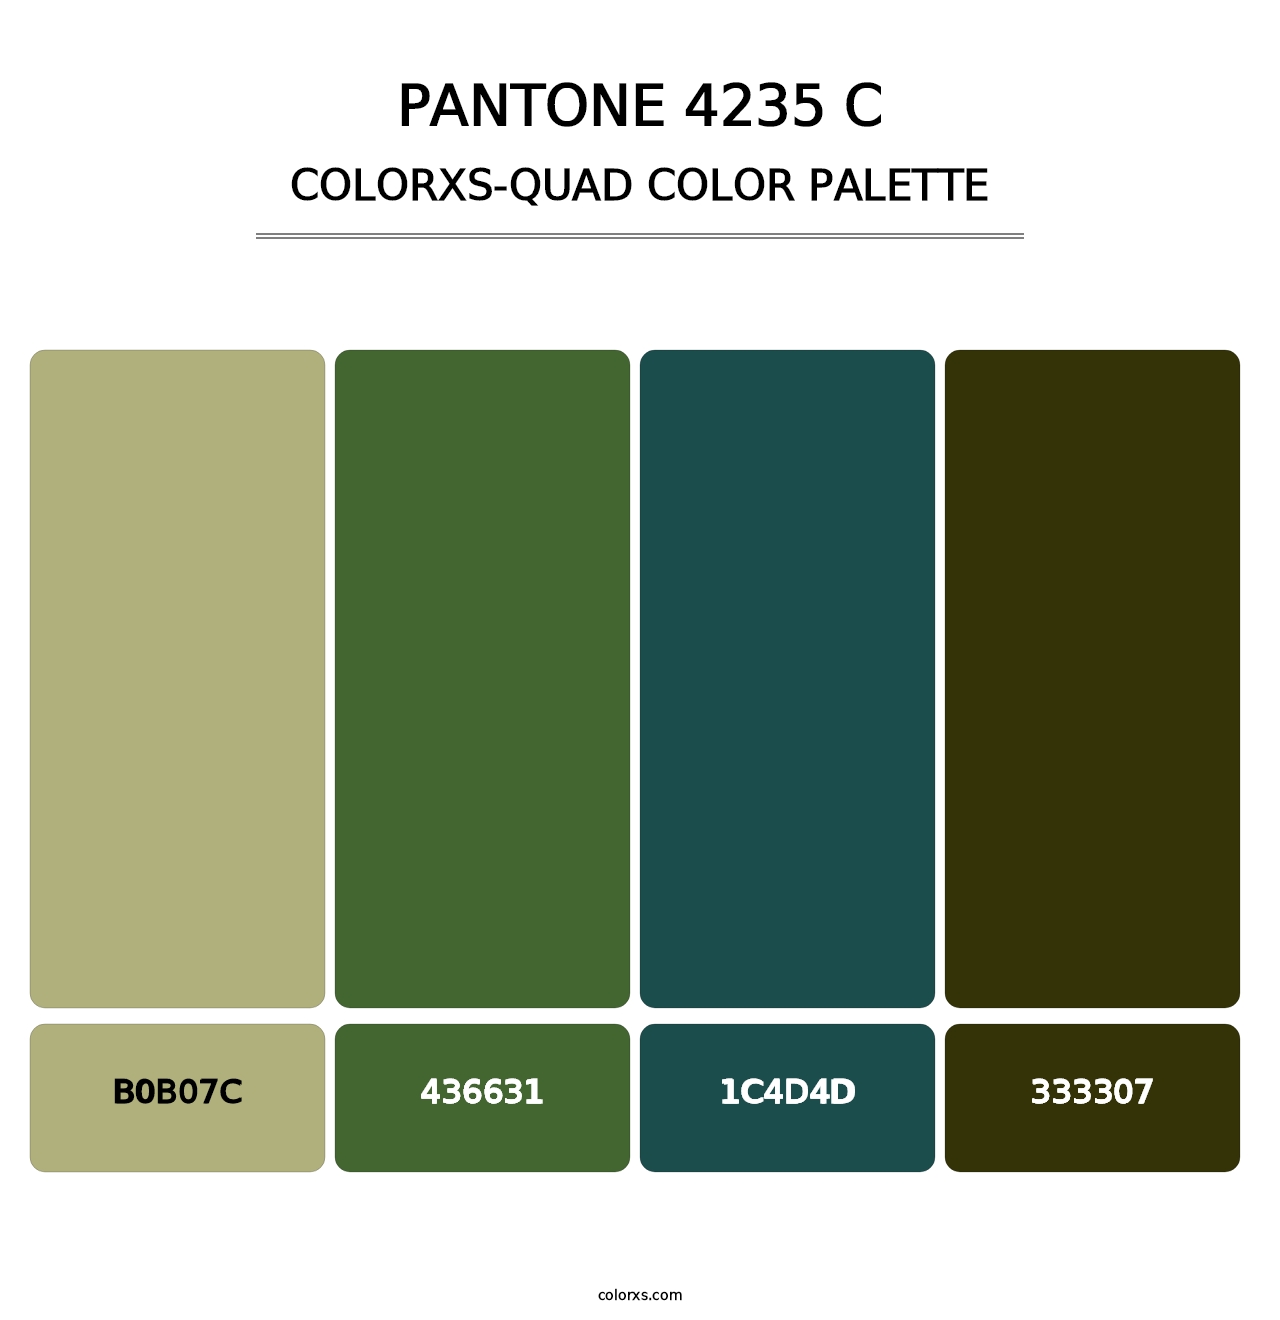 PANTONE 4235 C - Colorxs Quad Palette